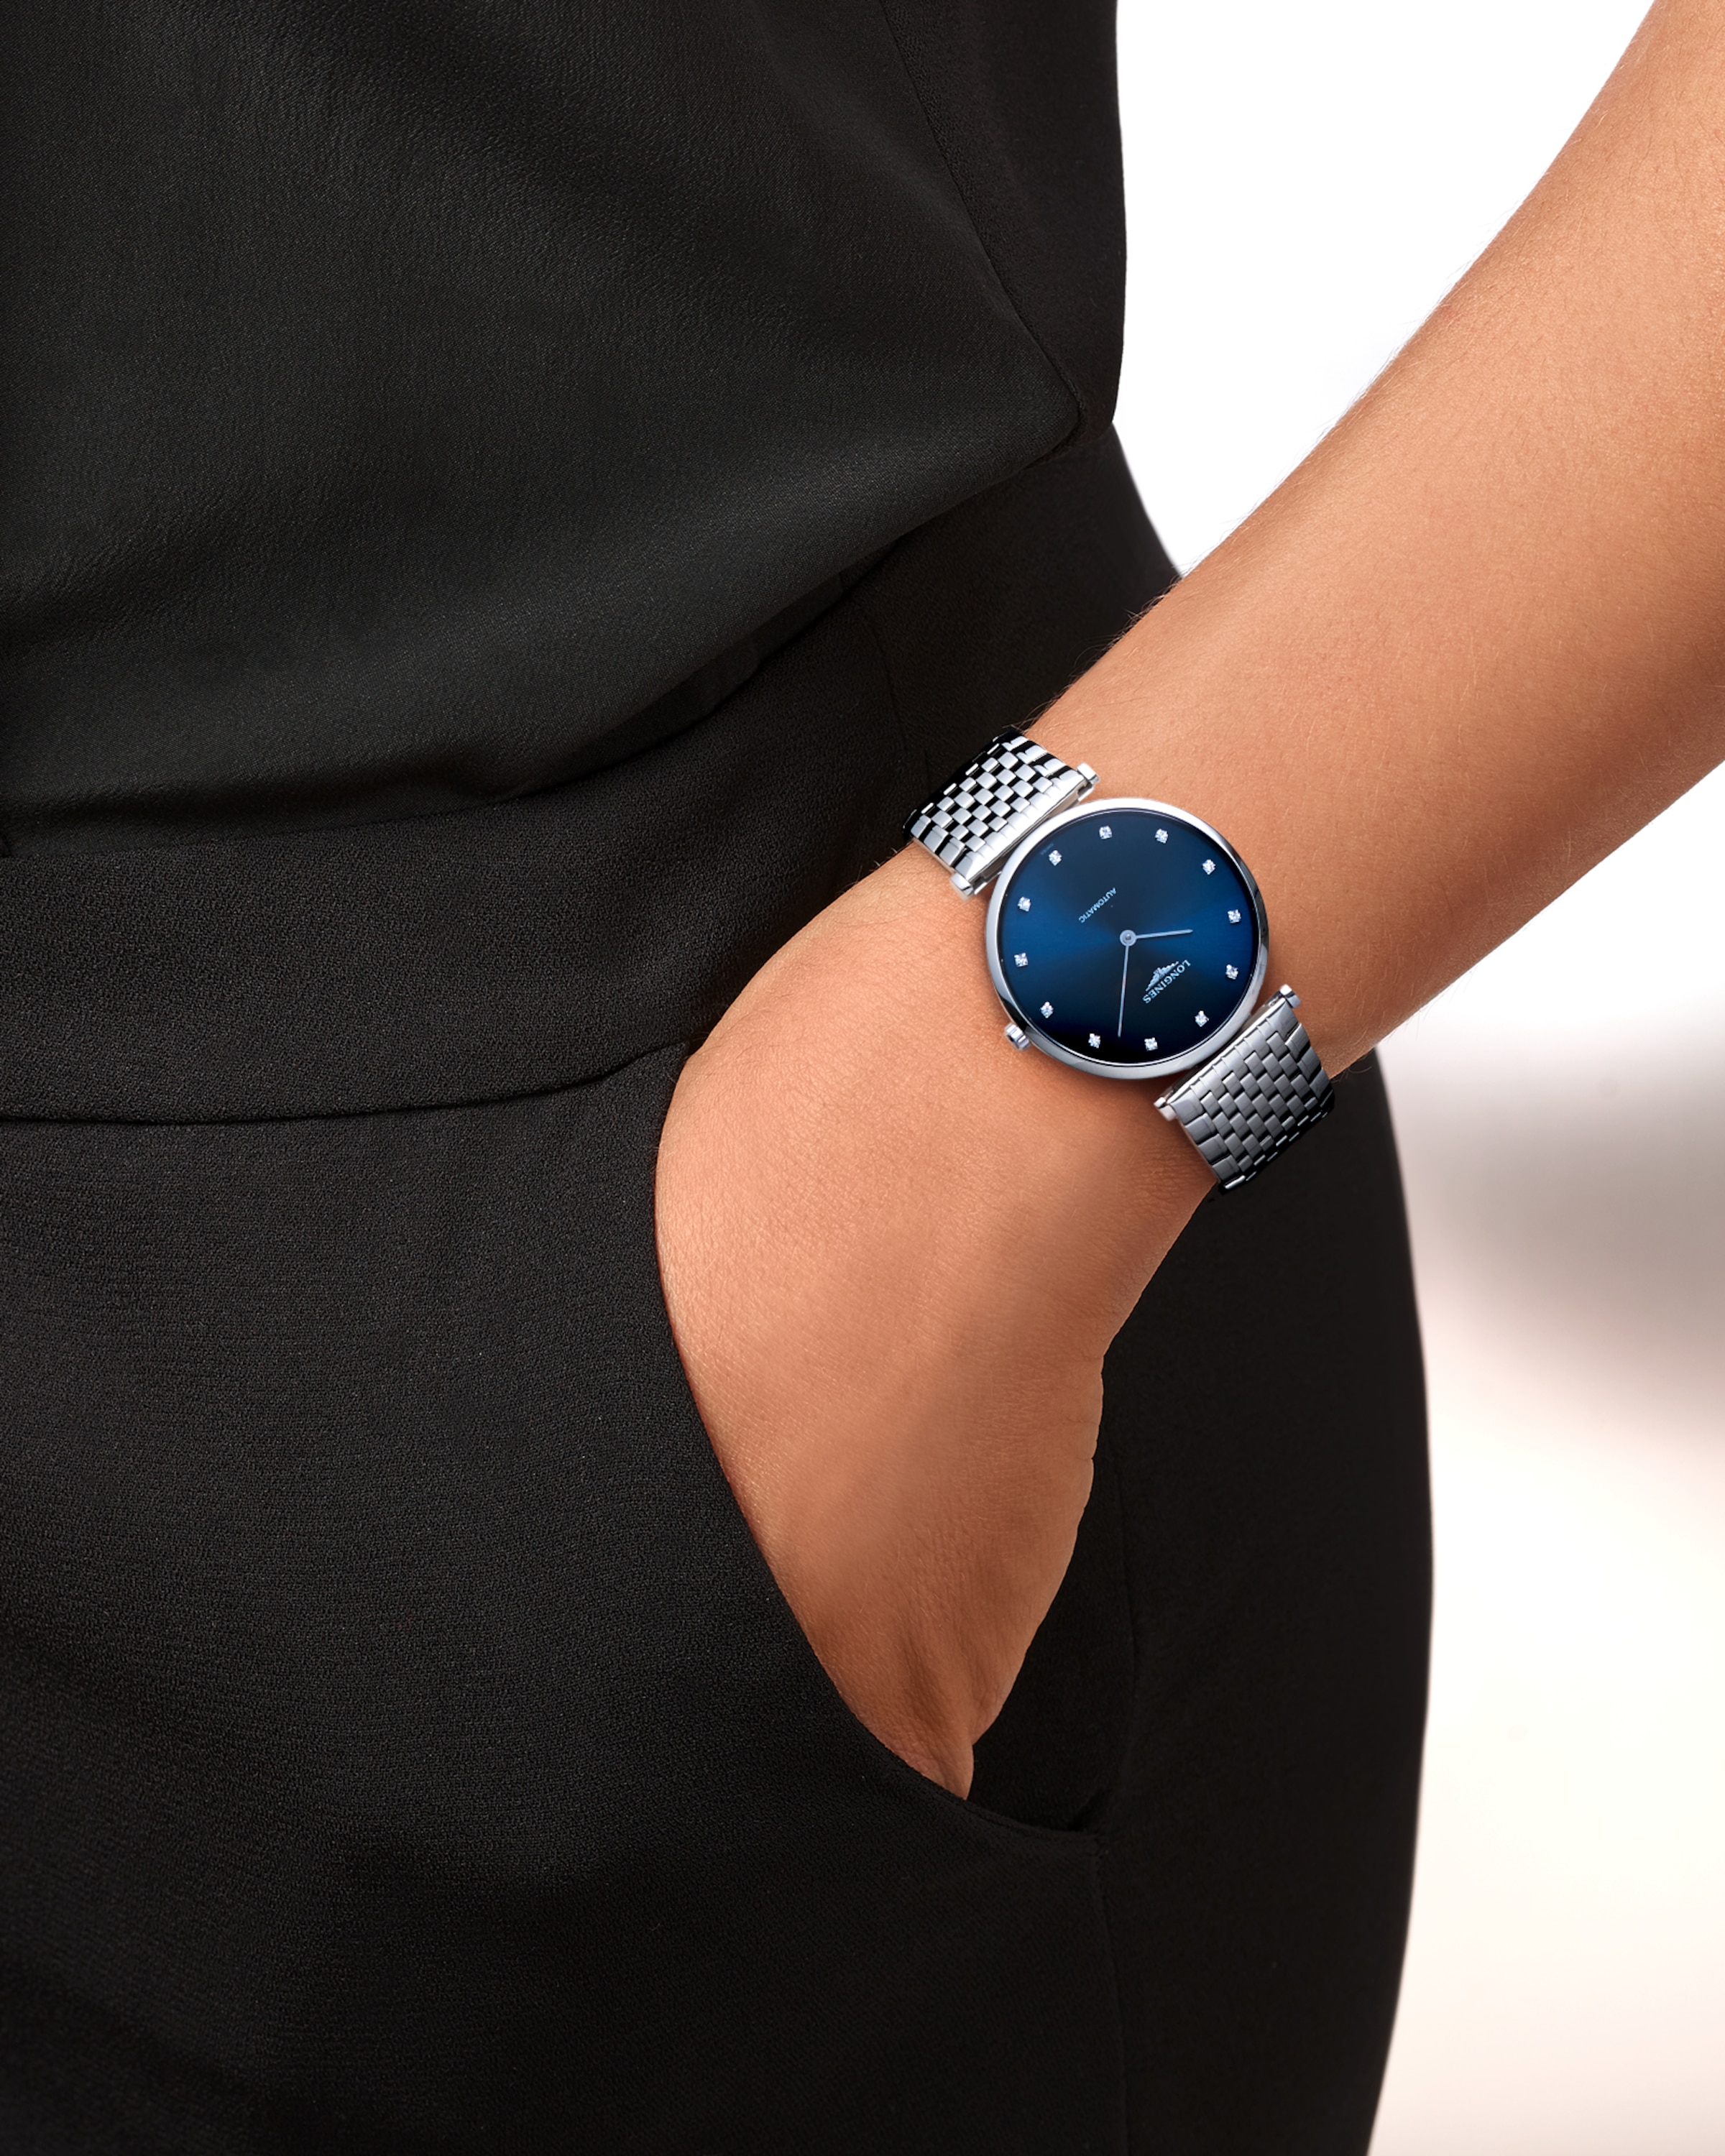 Longines LA GRANDE CLASSIQUE DE LONGINES Automatic Stainless steel Watch - L4.908.4.97.6